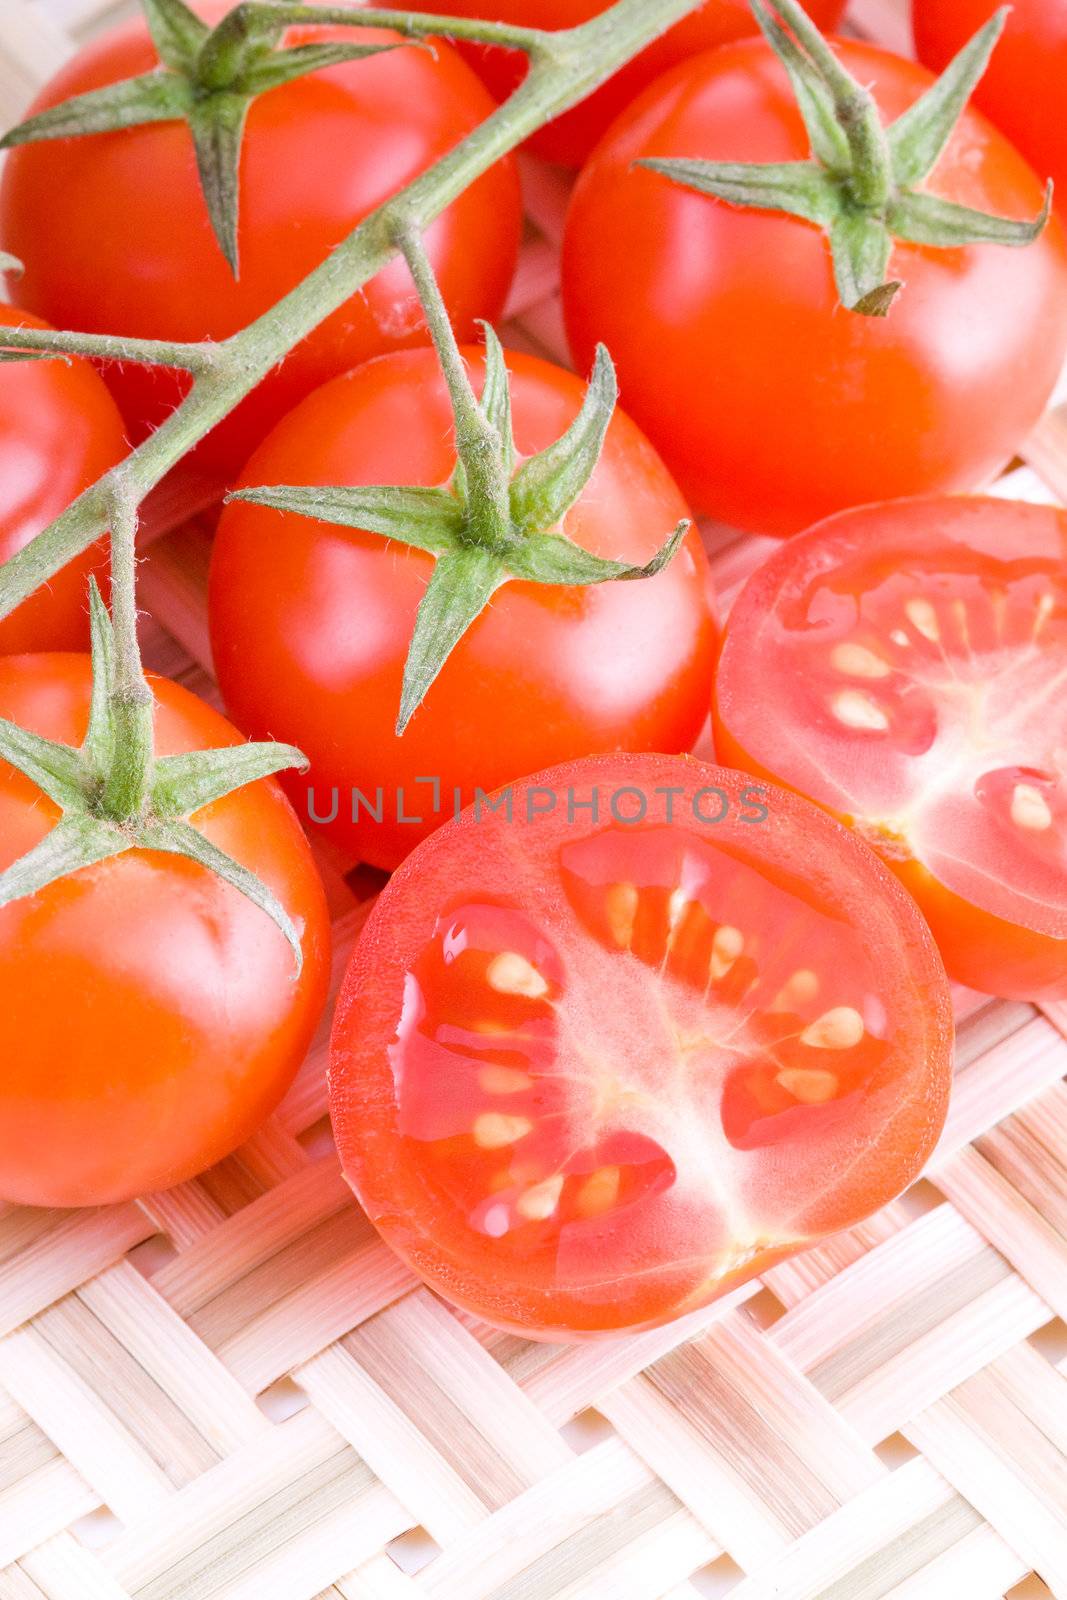 Small tomatoes by Gbuglok